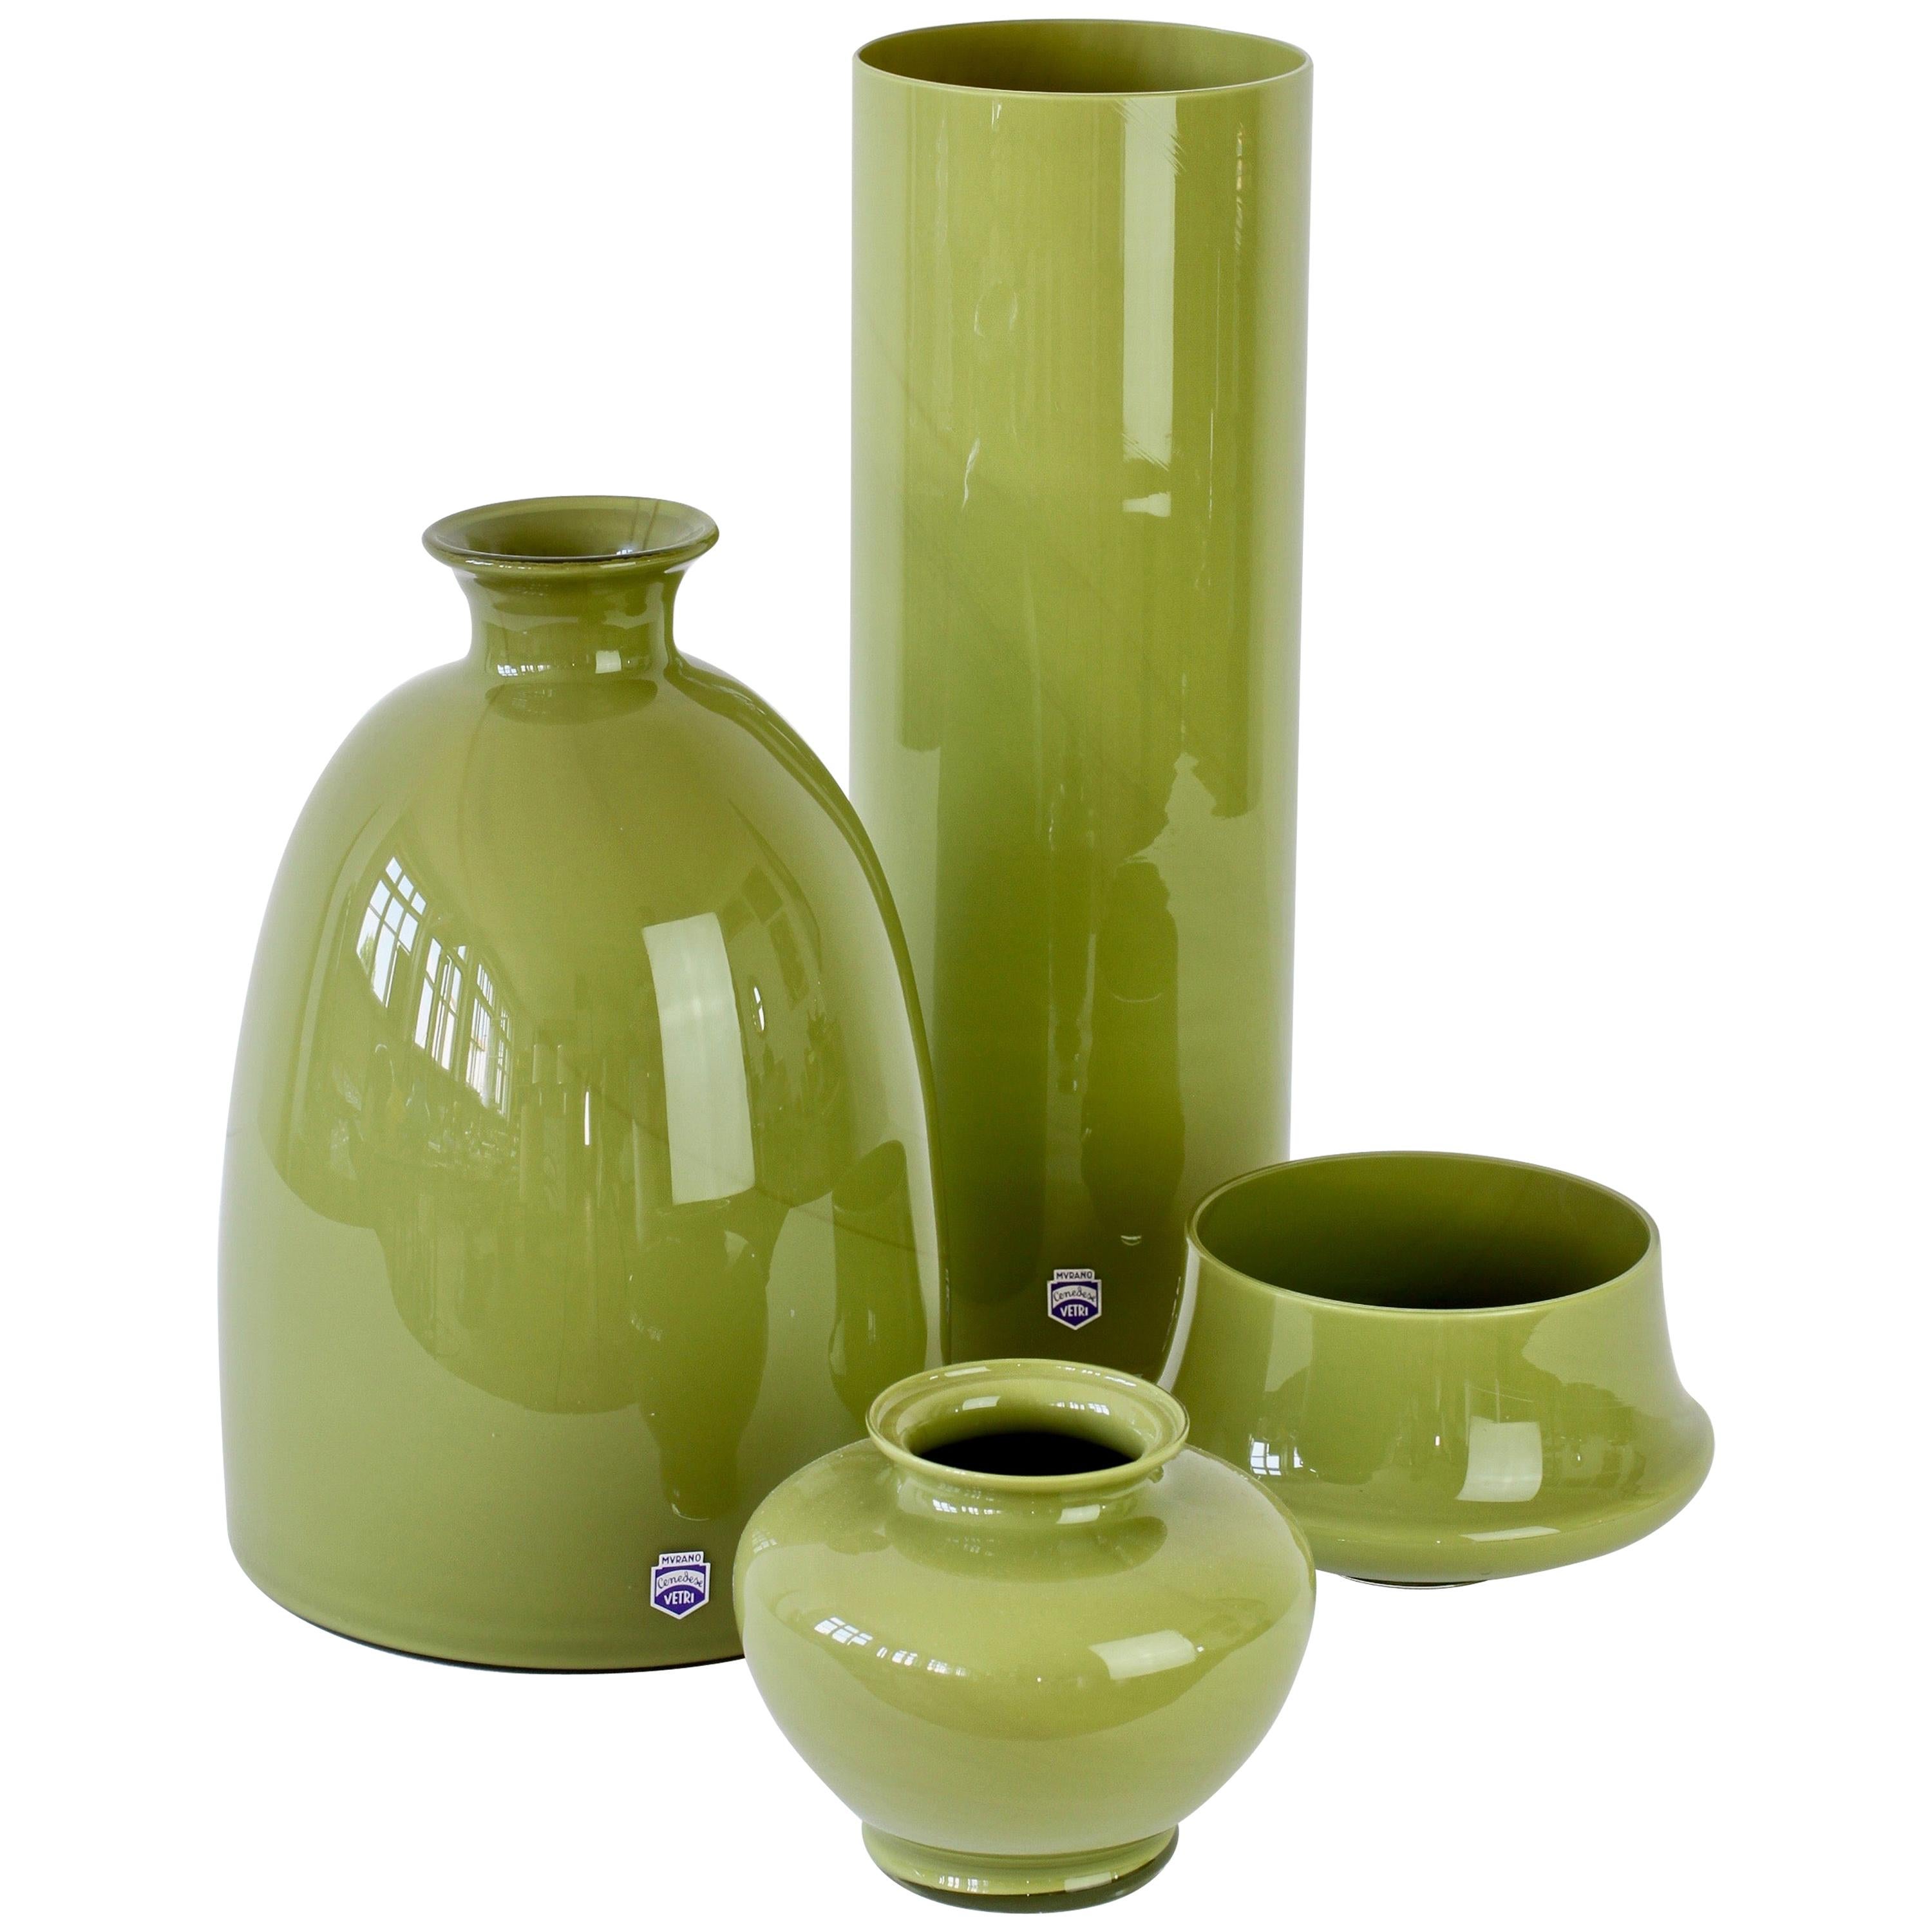 Cenedese Ensemble of Moss Green Vintage Midcentury Italian Murano Glass Vases